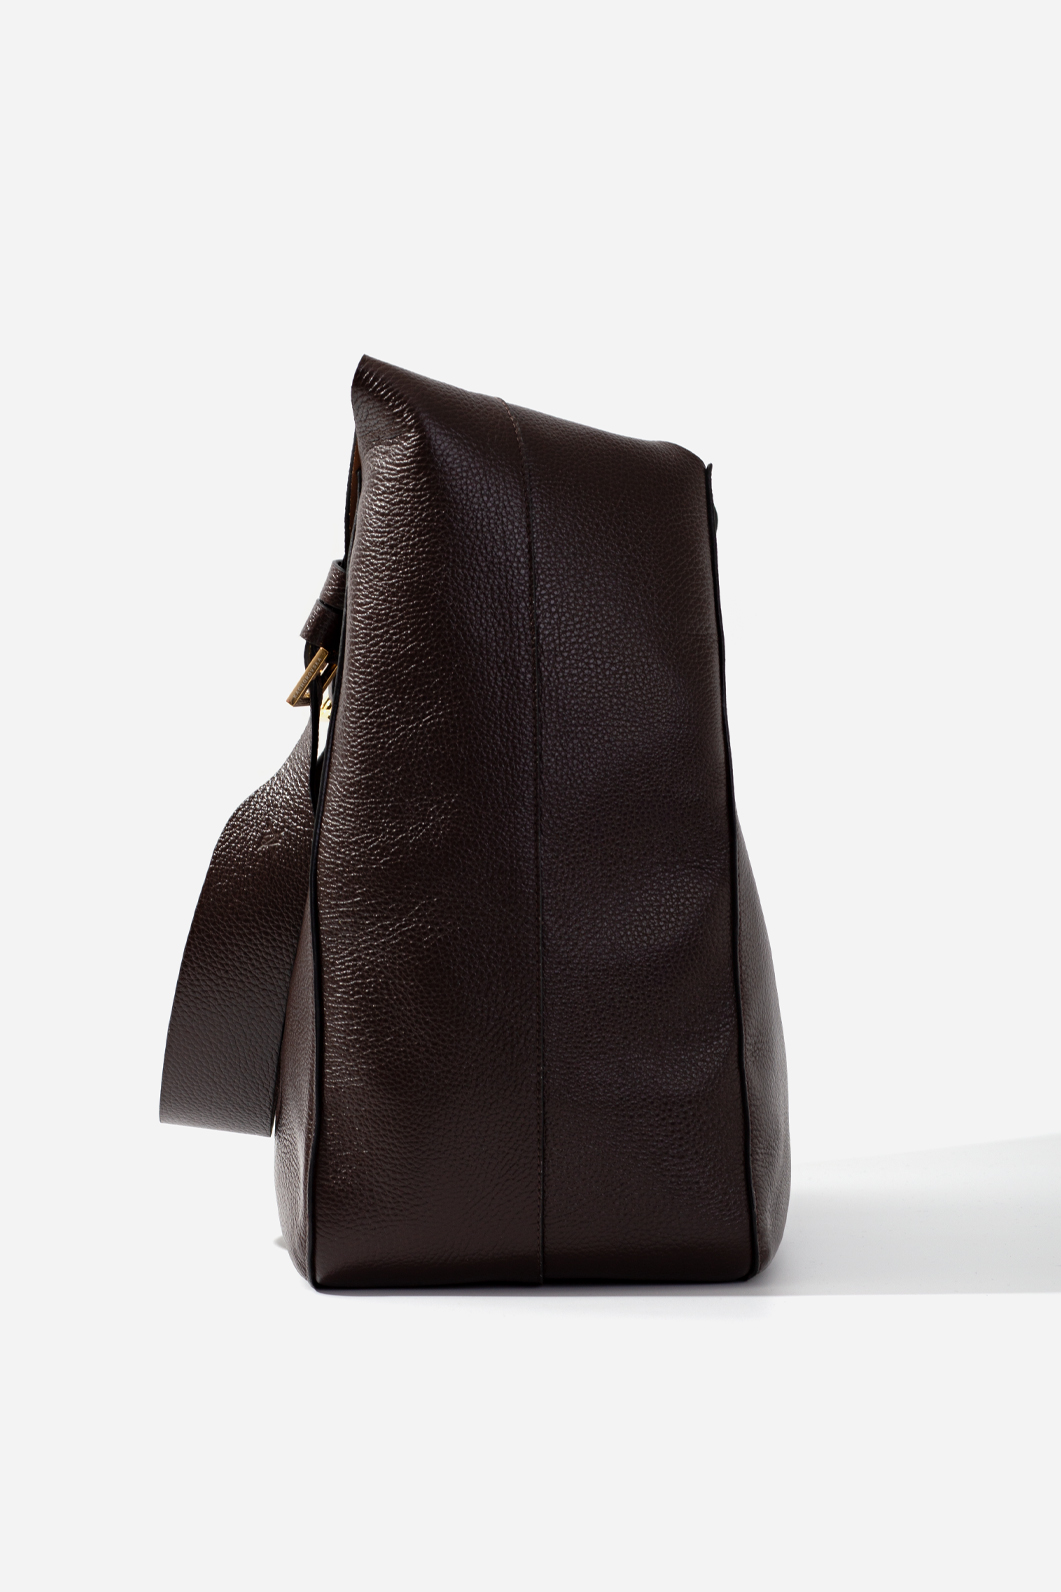 TASHA сумка-хобо темно-коричнева фактурна